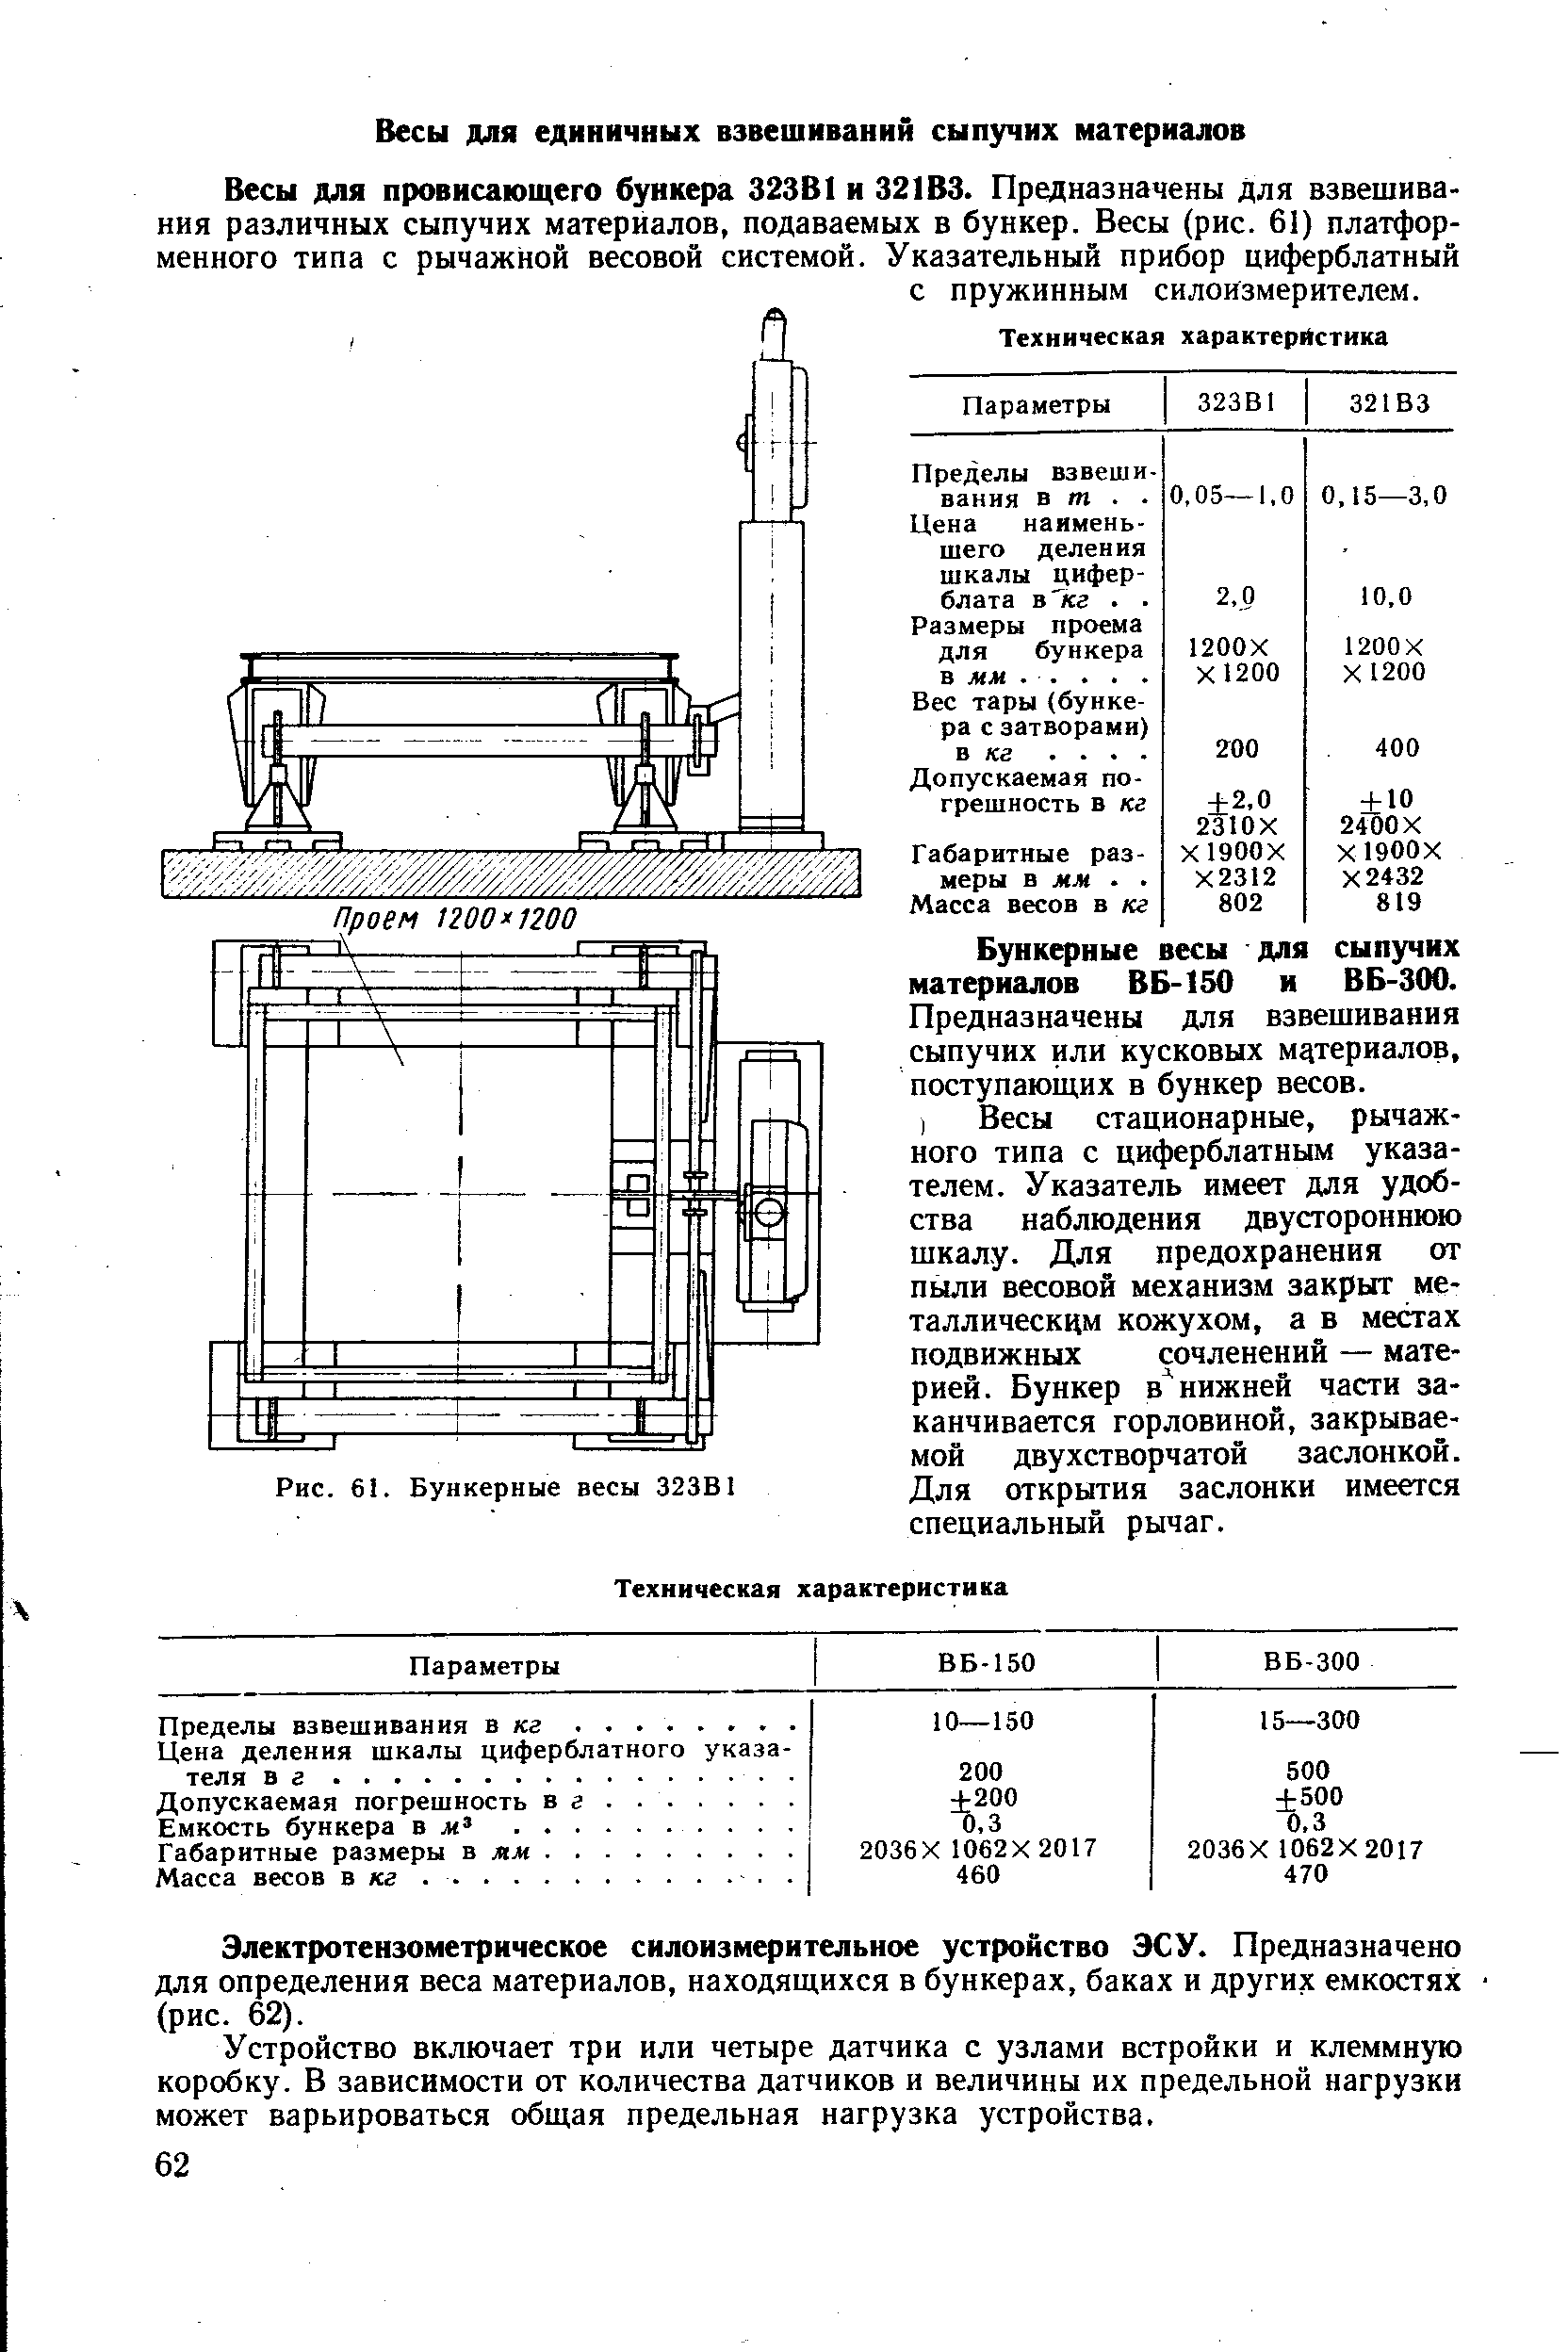 Бункерные весы для сыпучих материалов ВБ-150 и ВБ-300.